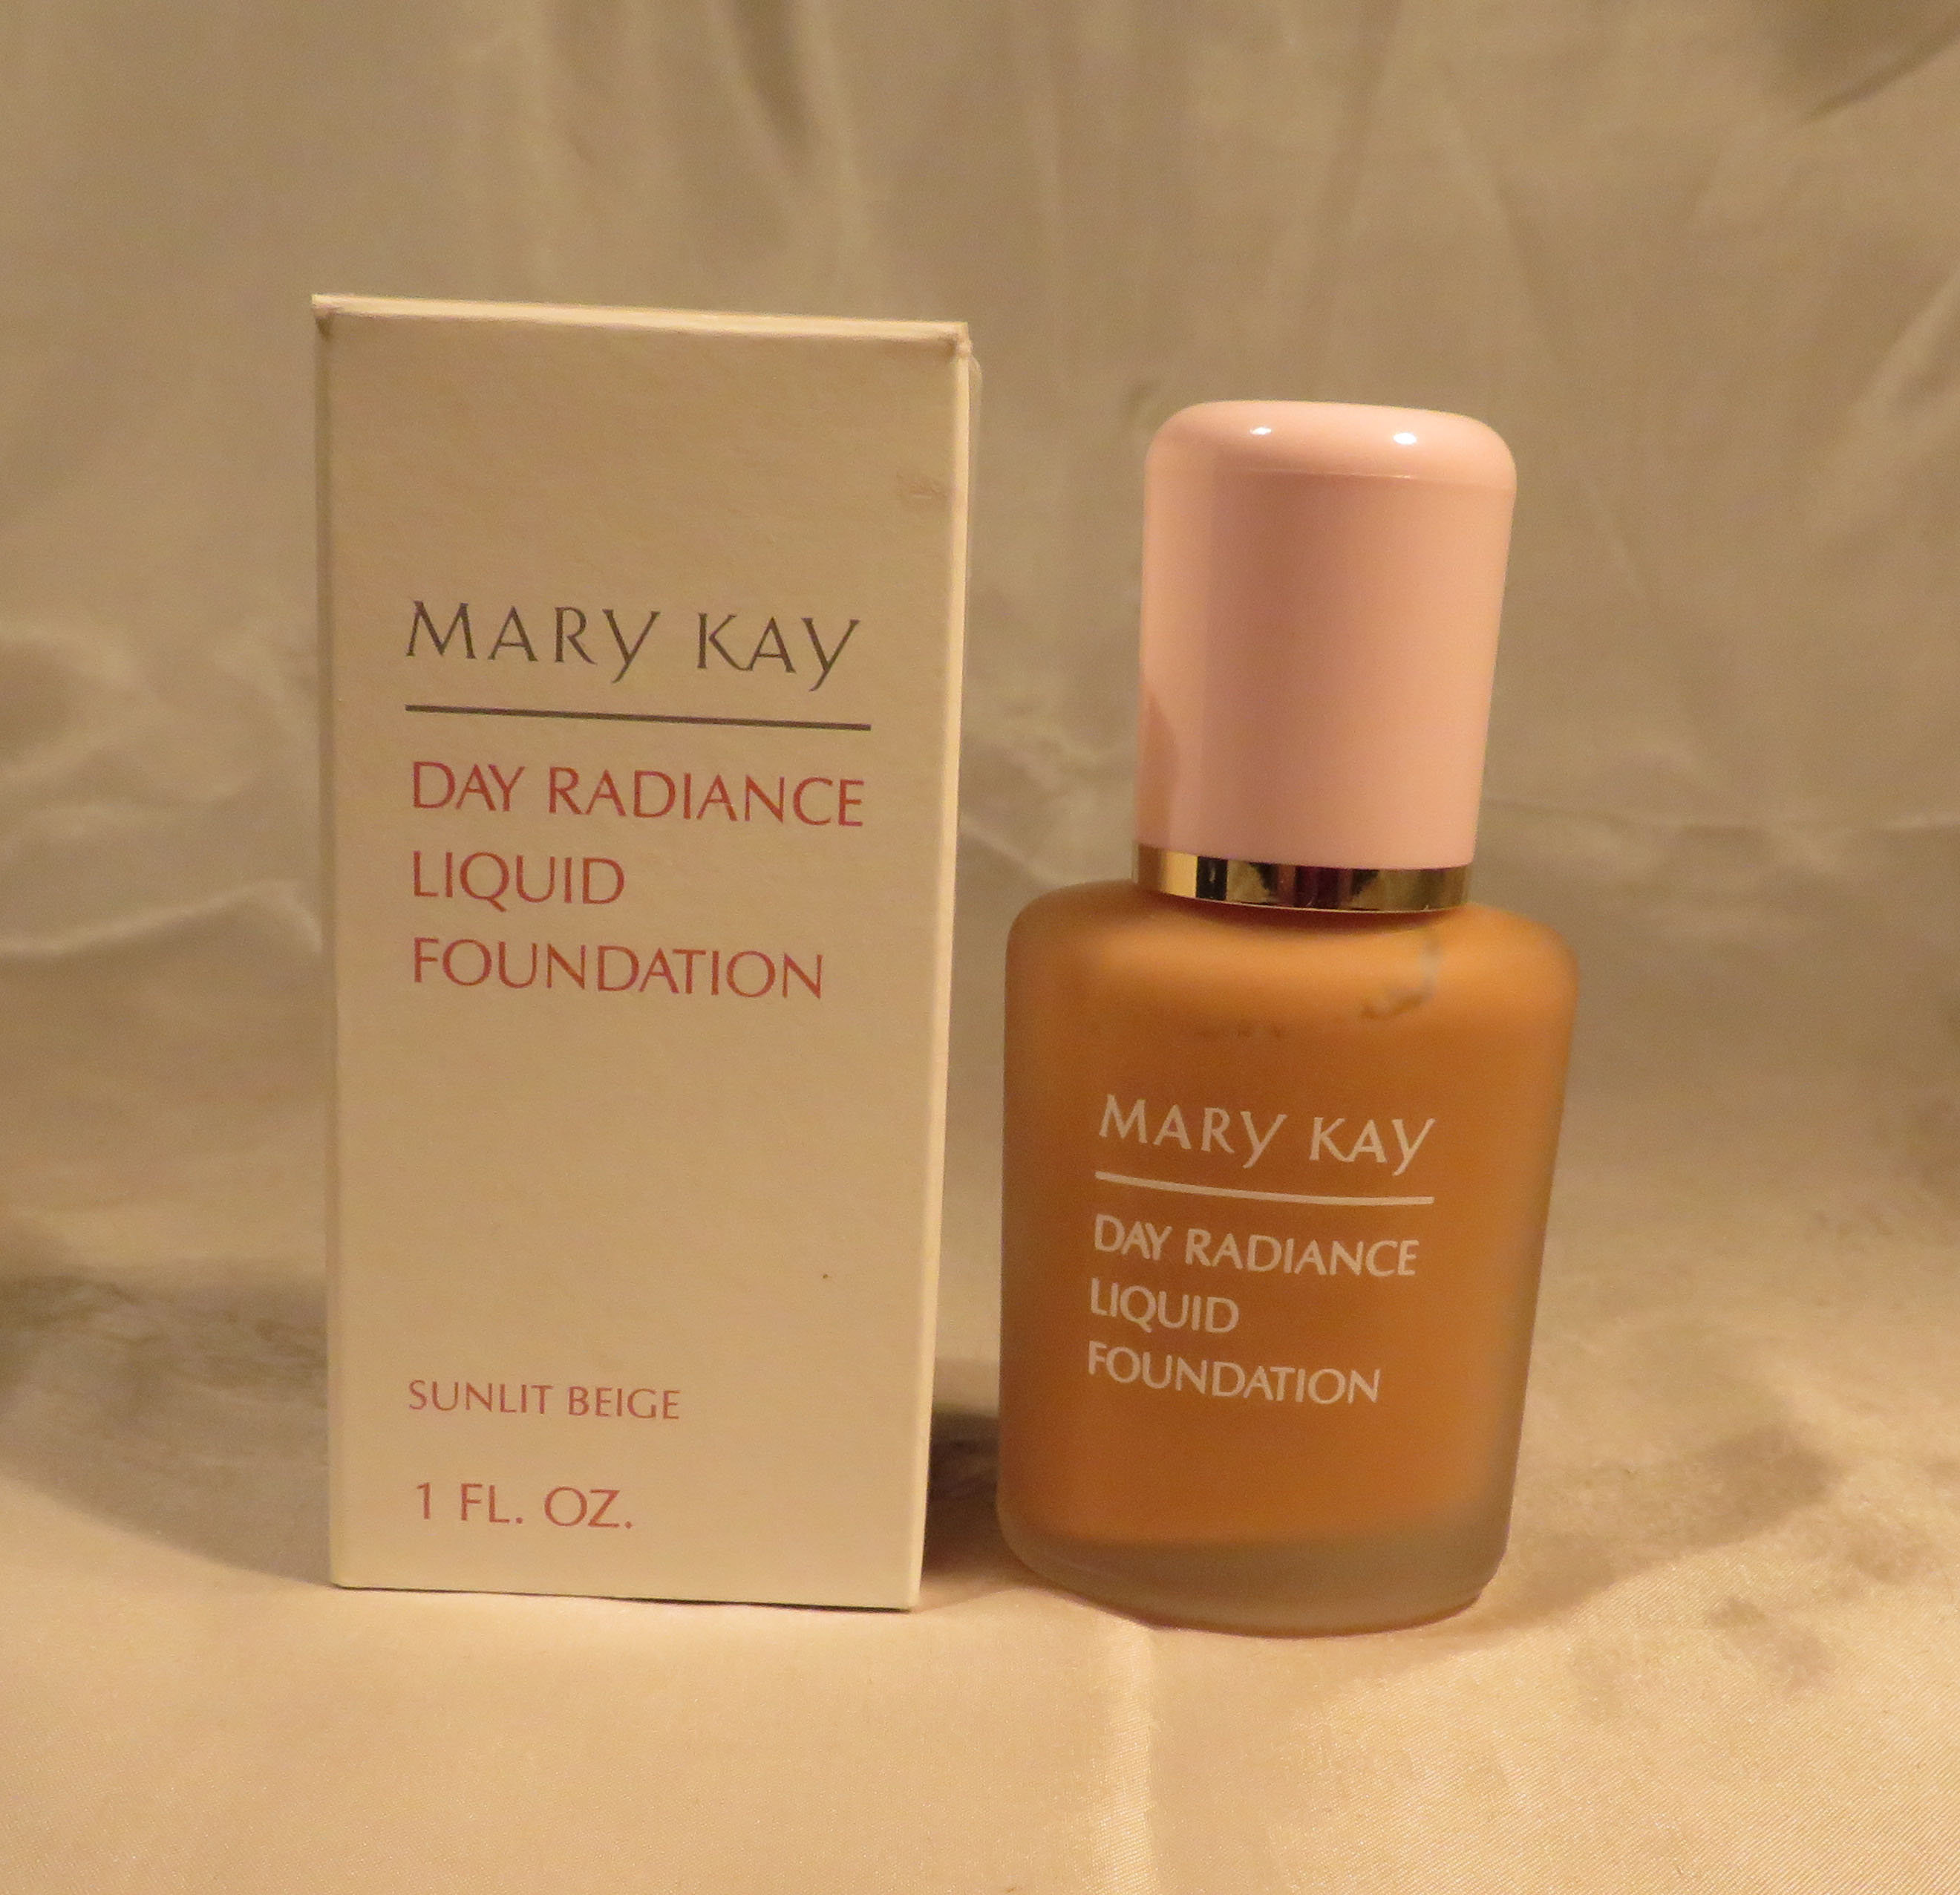 Mary kay foundation shades  Mary kay foundation, Mary kay cosmetics, Mary  kay liquid foundation